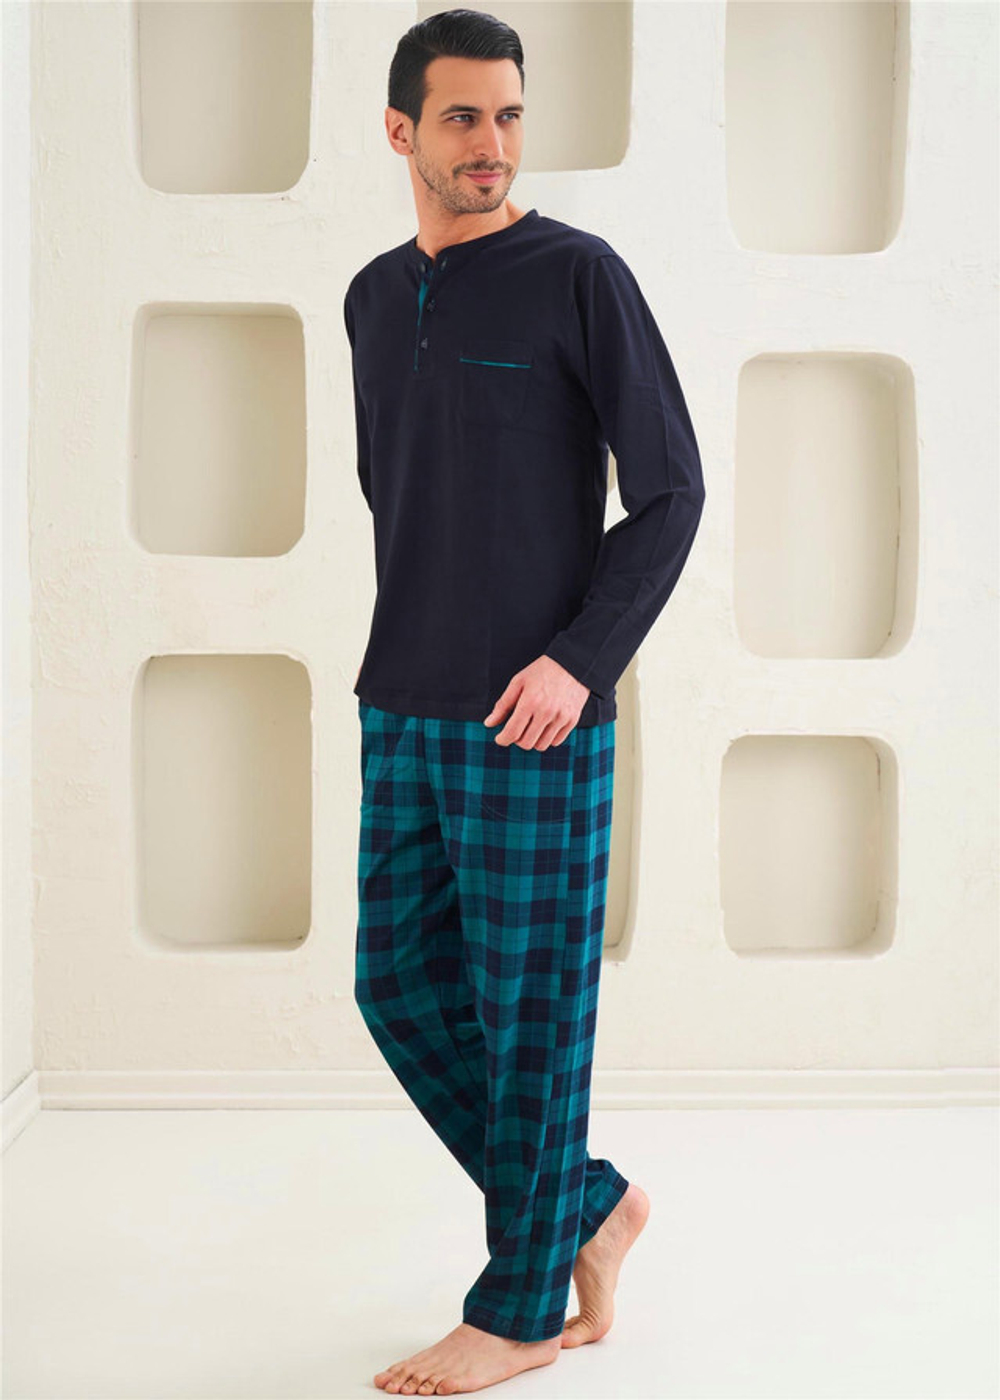 Мужская Пижама 2-х предметная - Классический стиль, средняя плотность, уникальный дизайн - Зеленая клетка - 10810